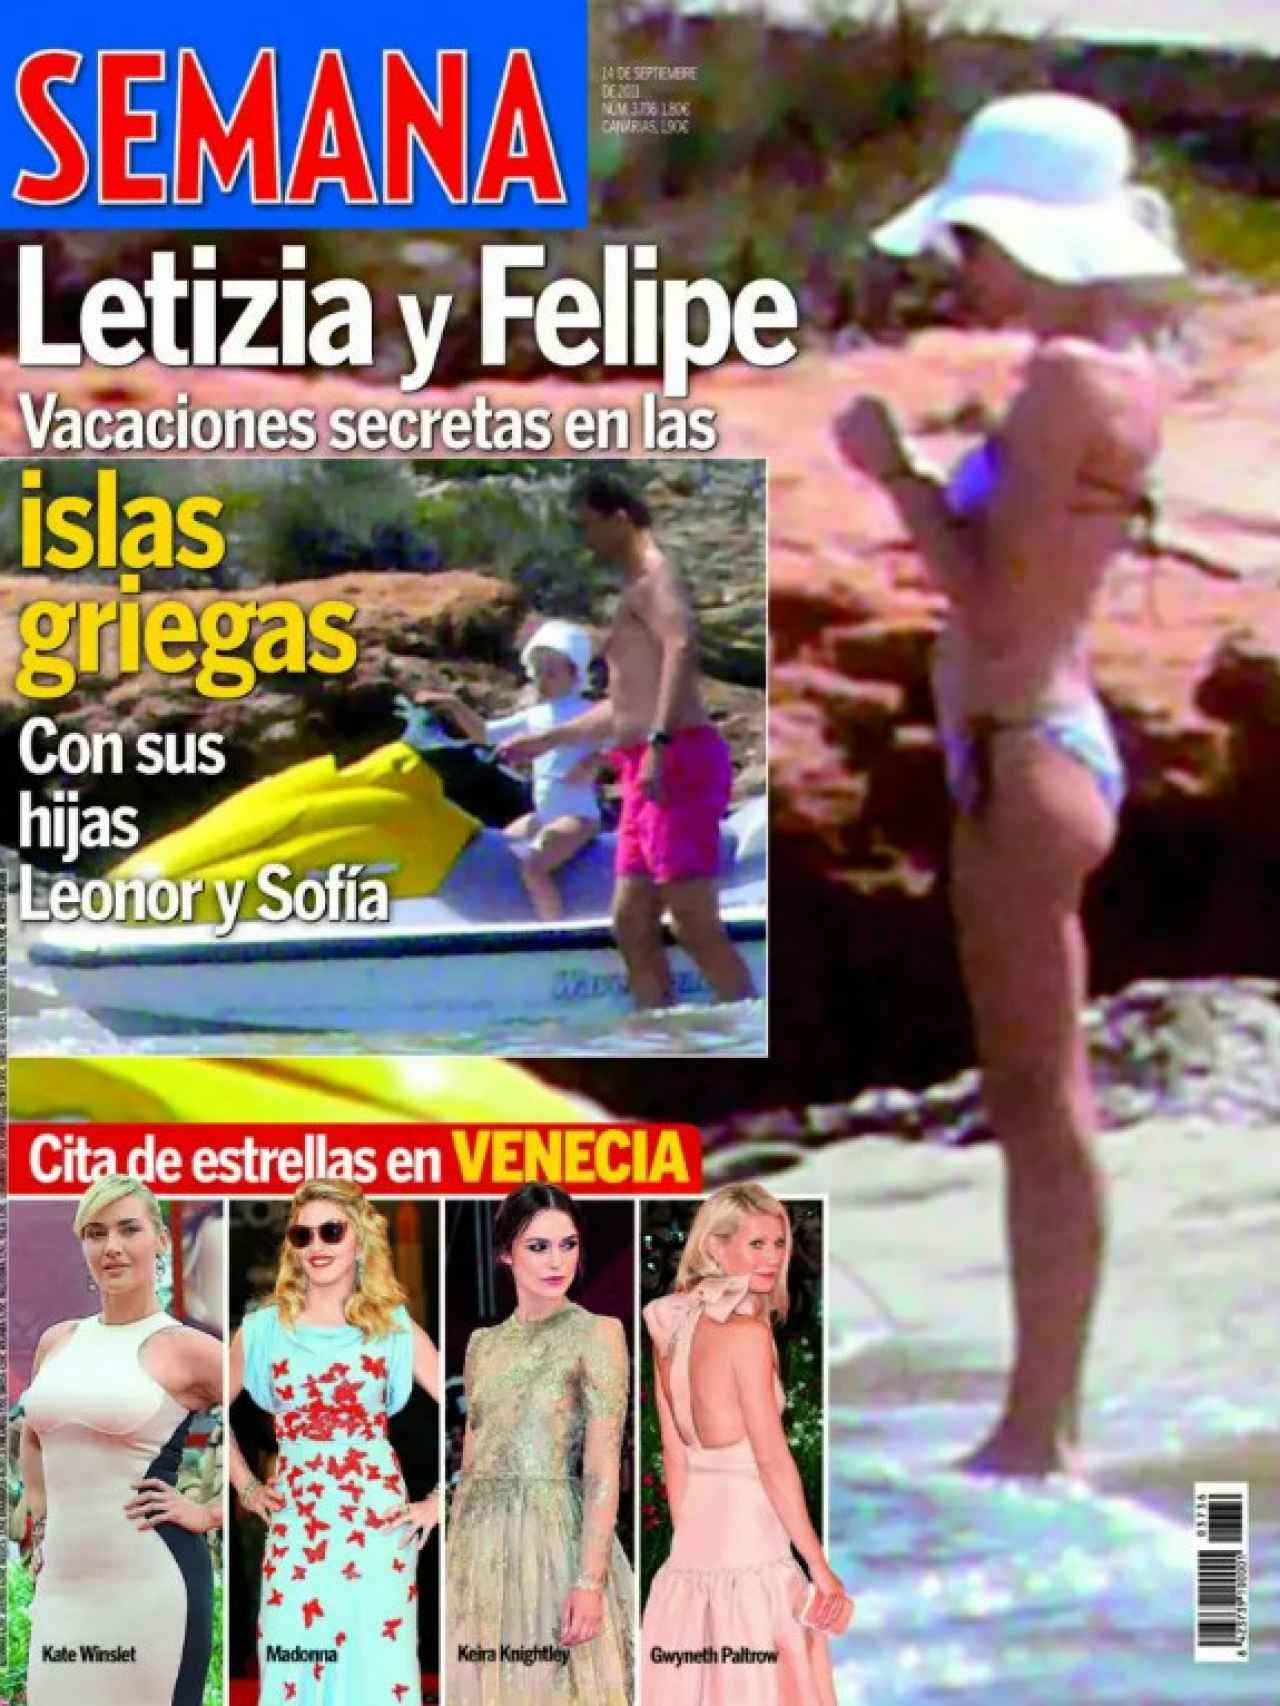 La portada de la revista 'Semana' que mostró la foto de Letizia en bikini.